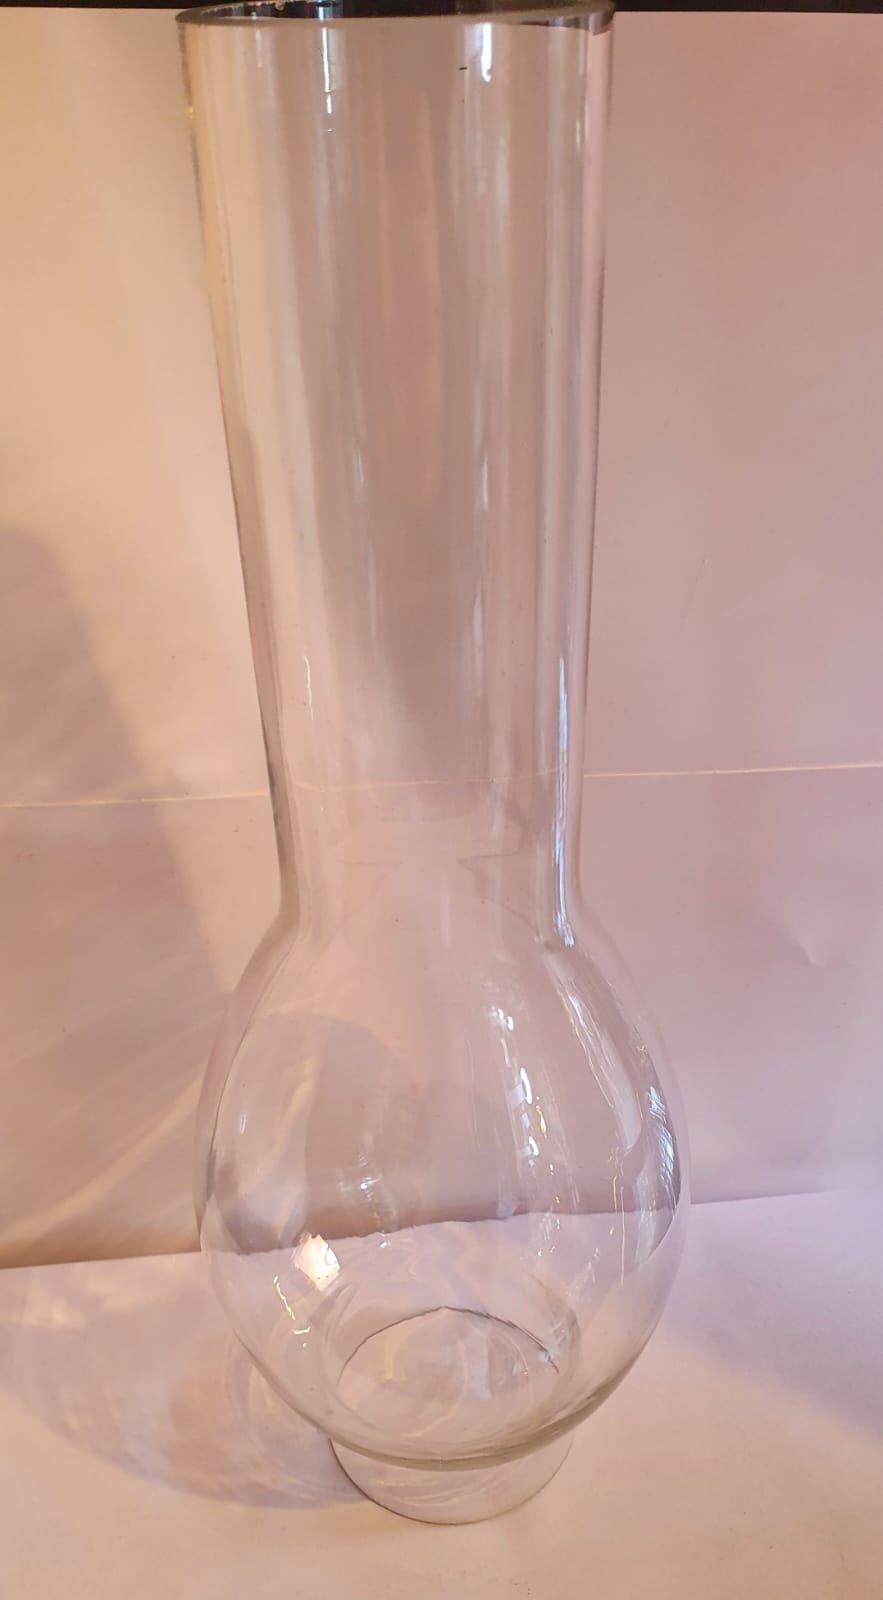 Sticlă pentru lampa pe gaz, aprox 5 cm